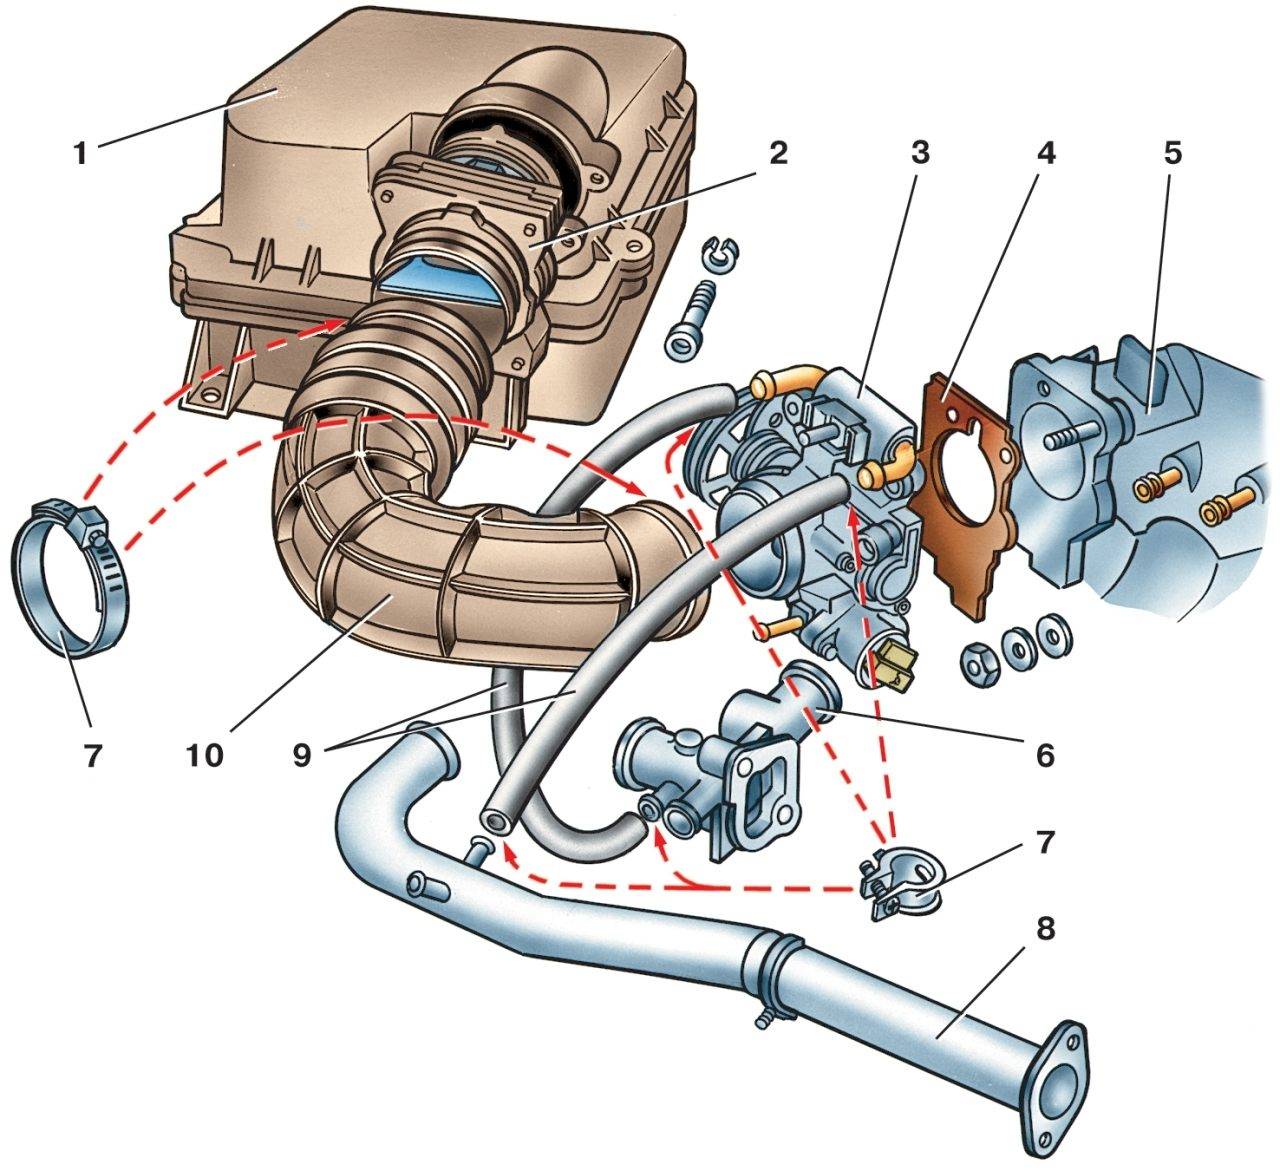 Воздух в системе охлаждения двигателя: Как определить, что система охлаждения двигателя «завоздушена»? | Автомеханик